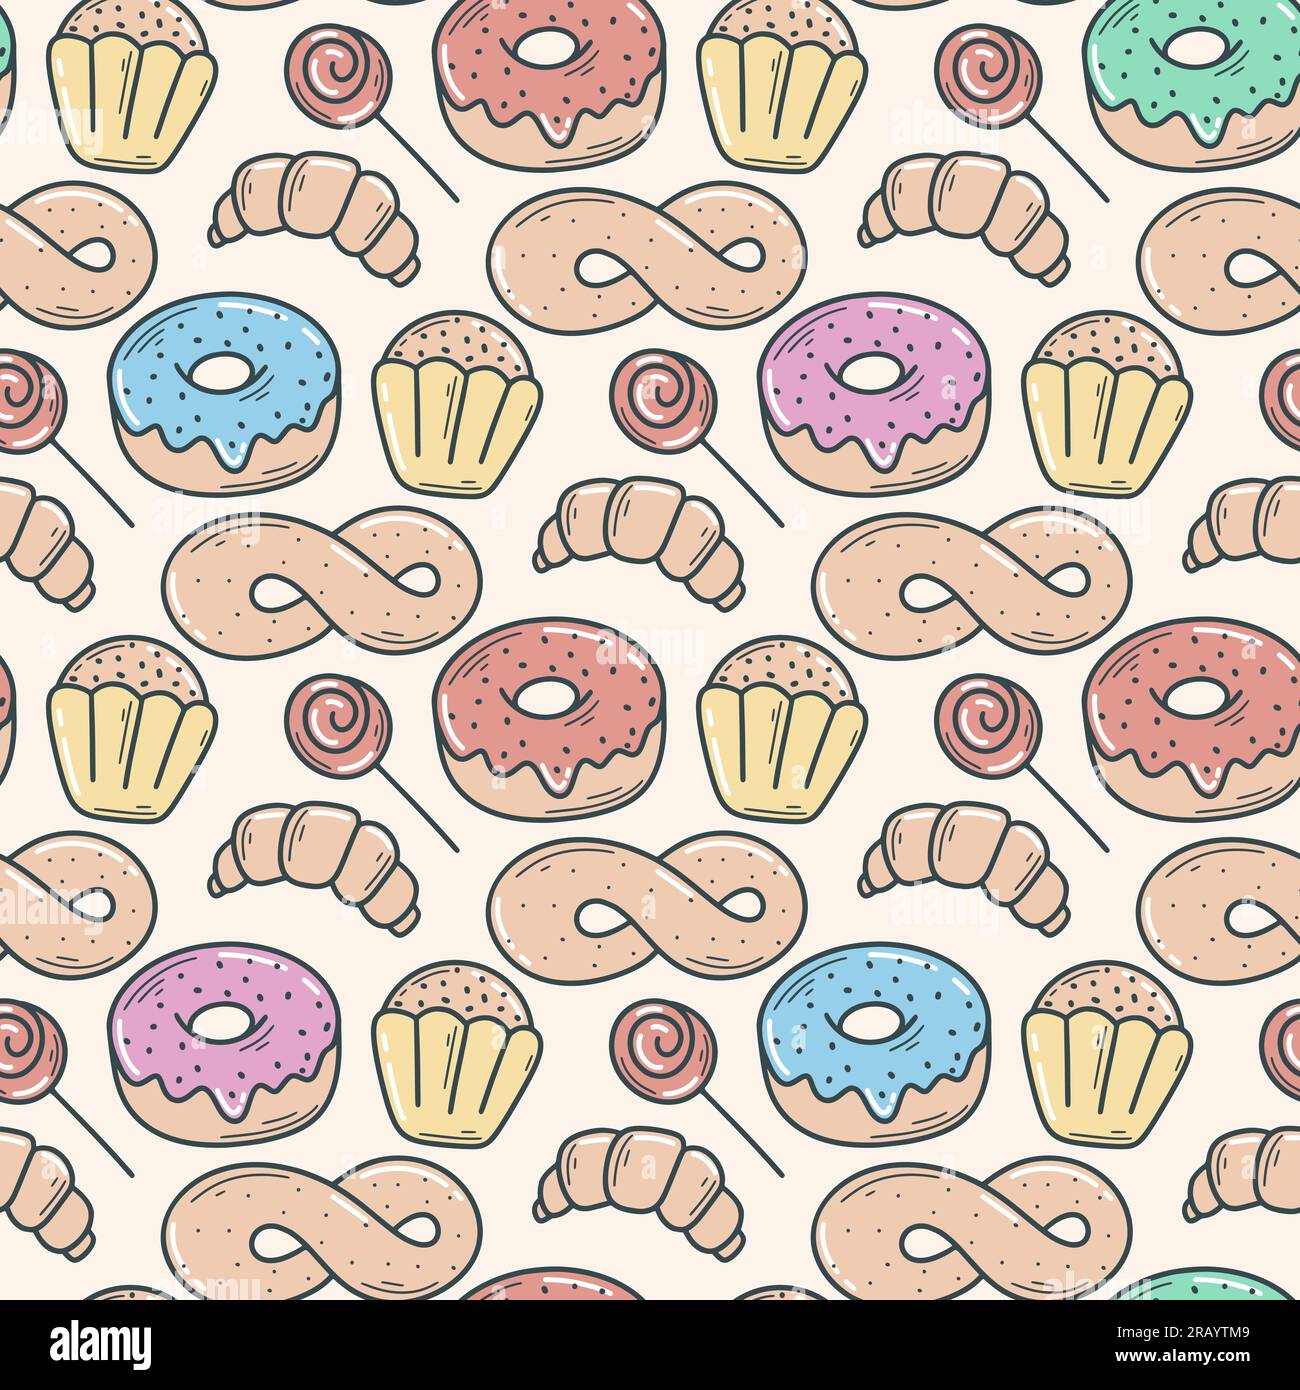 Donuts, Muffins und Brötchen, nahtloses Muster. Süßes Street Food im Retro-Stil. Mehlprodukte werden für Verpackungen, Süßwaren, Cafés und Produkte gedruckt Stock Vektor